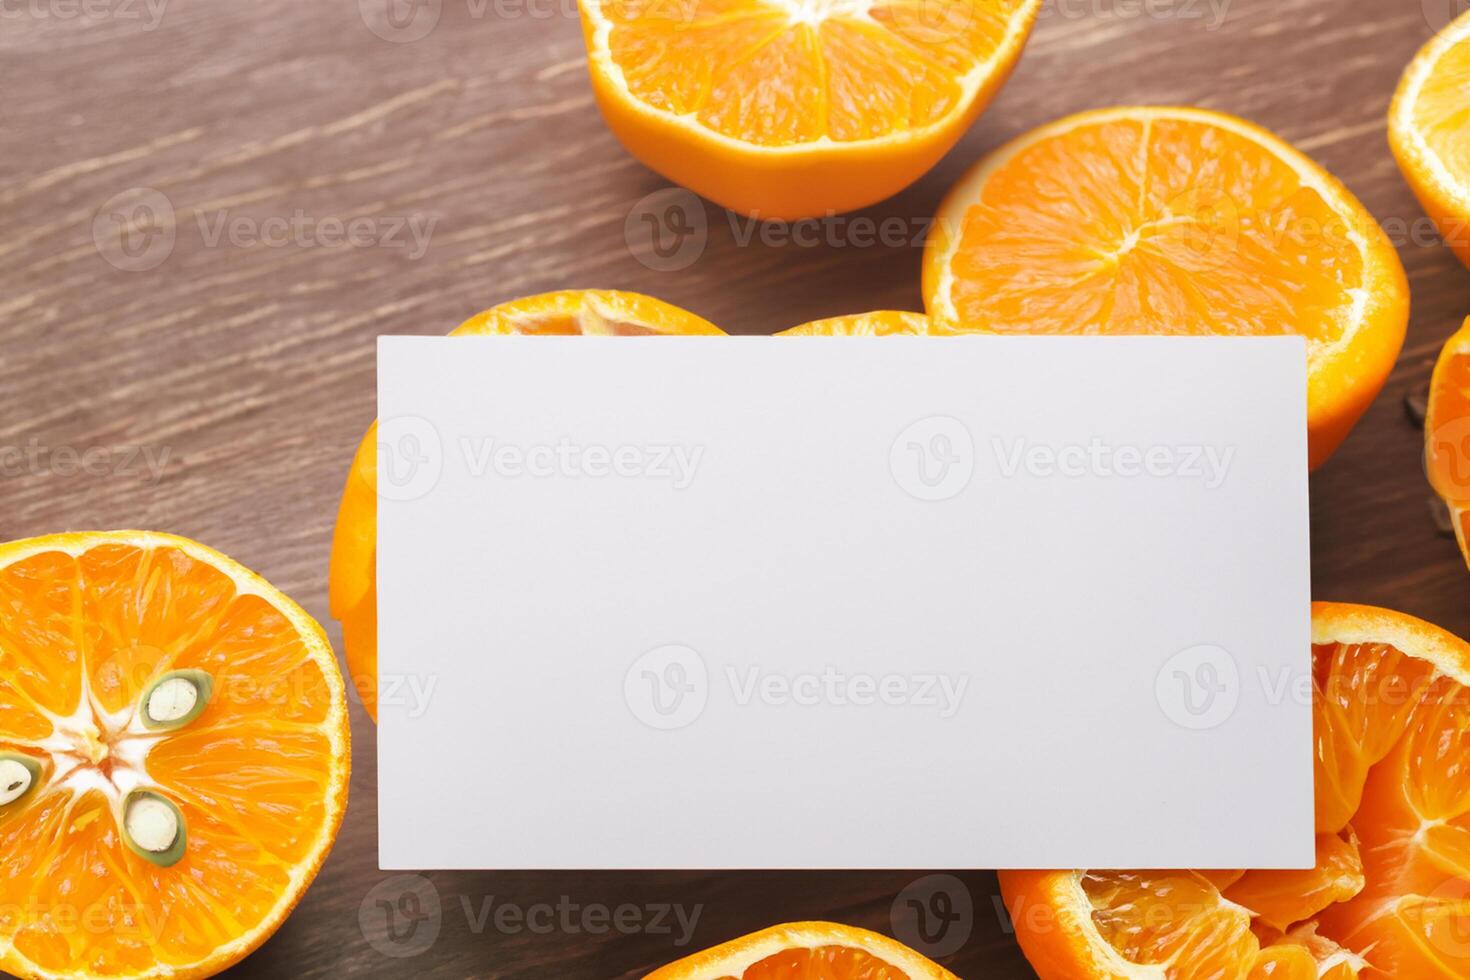 wit papier mockup verlevendigd door de pittig aura van vers sinaasappelen, bouwen een zichtbaar symfonie van culinaire weelde en gezond ontwerp foto